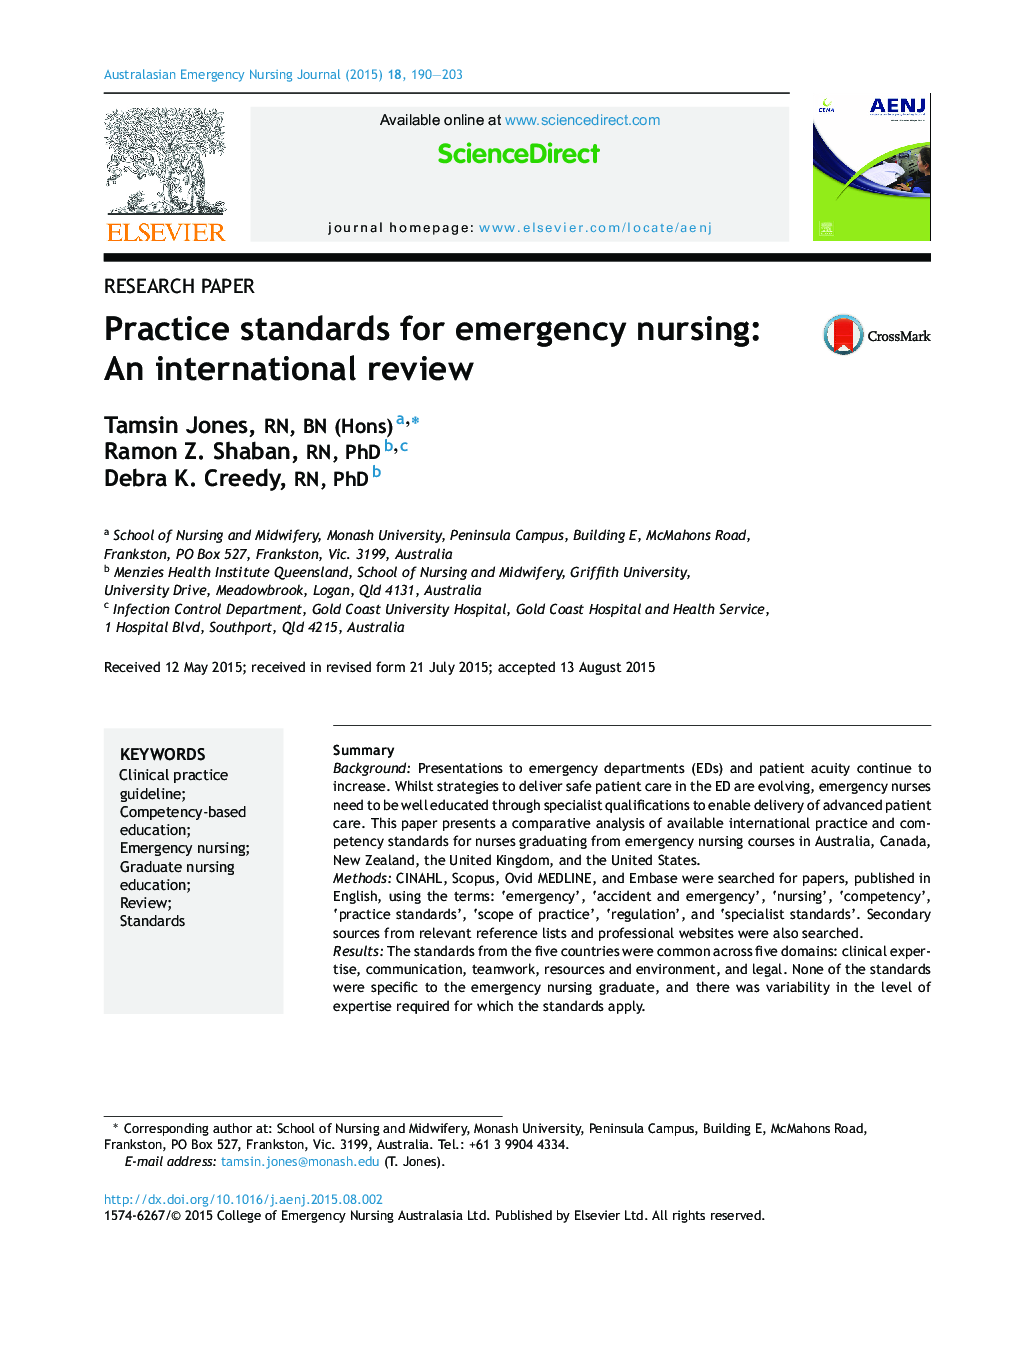 استانداردهای تمرین برای پرستاری اورژانس: یک بررسی بین المللی